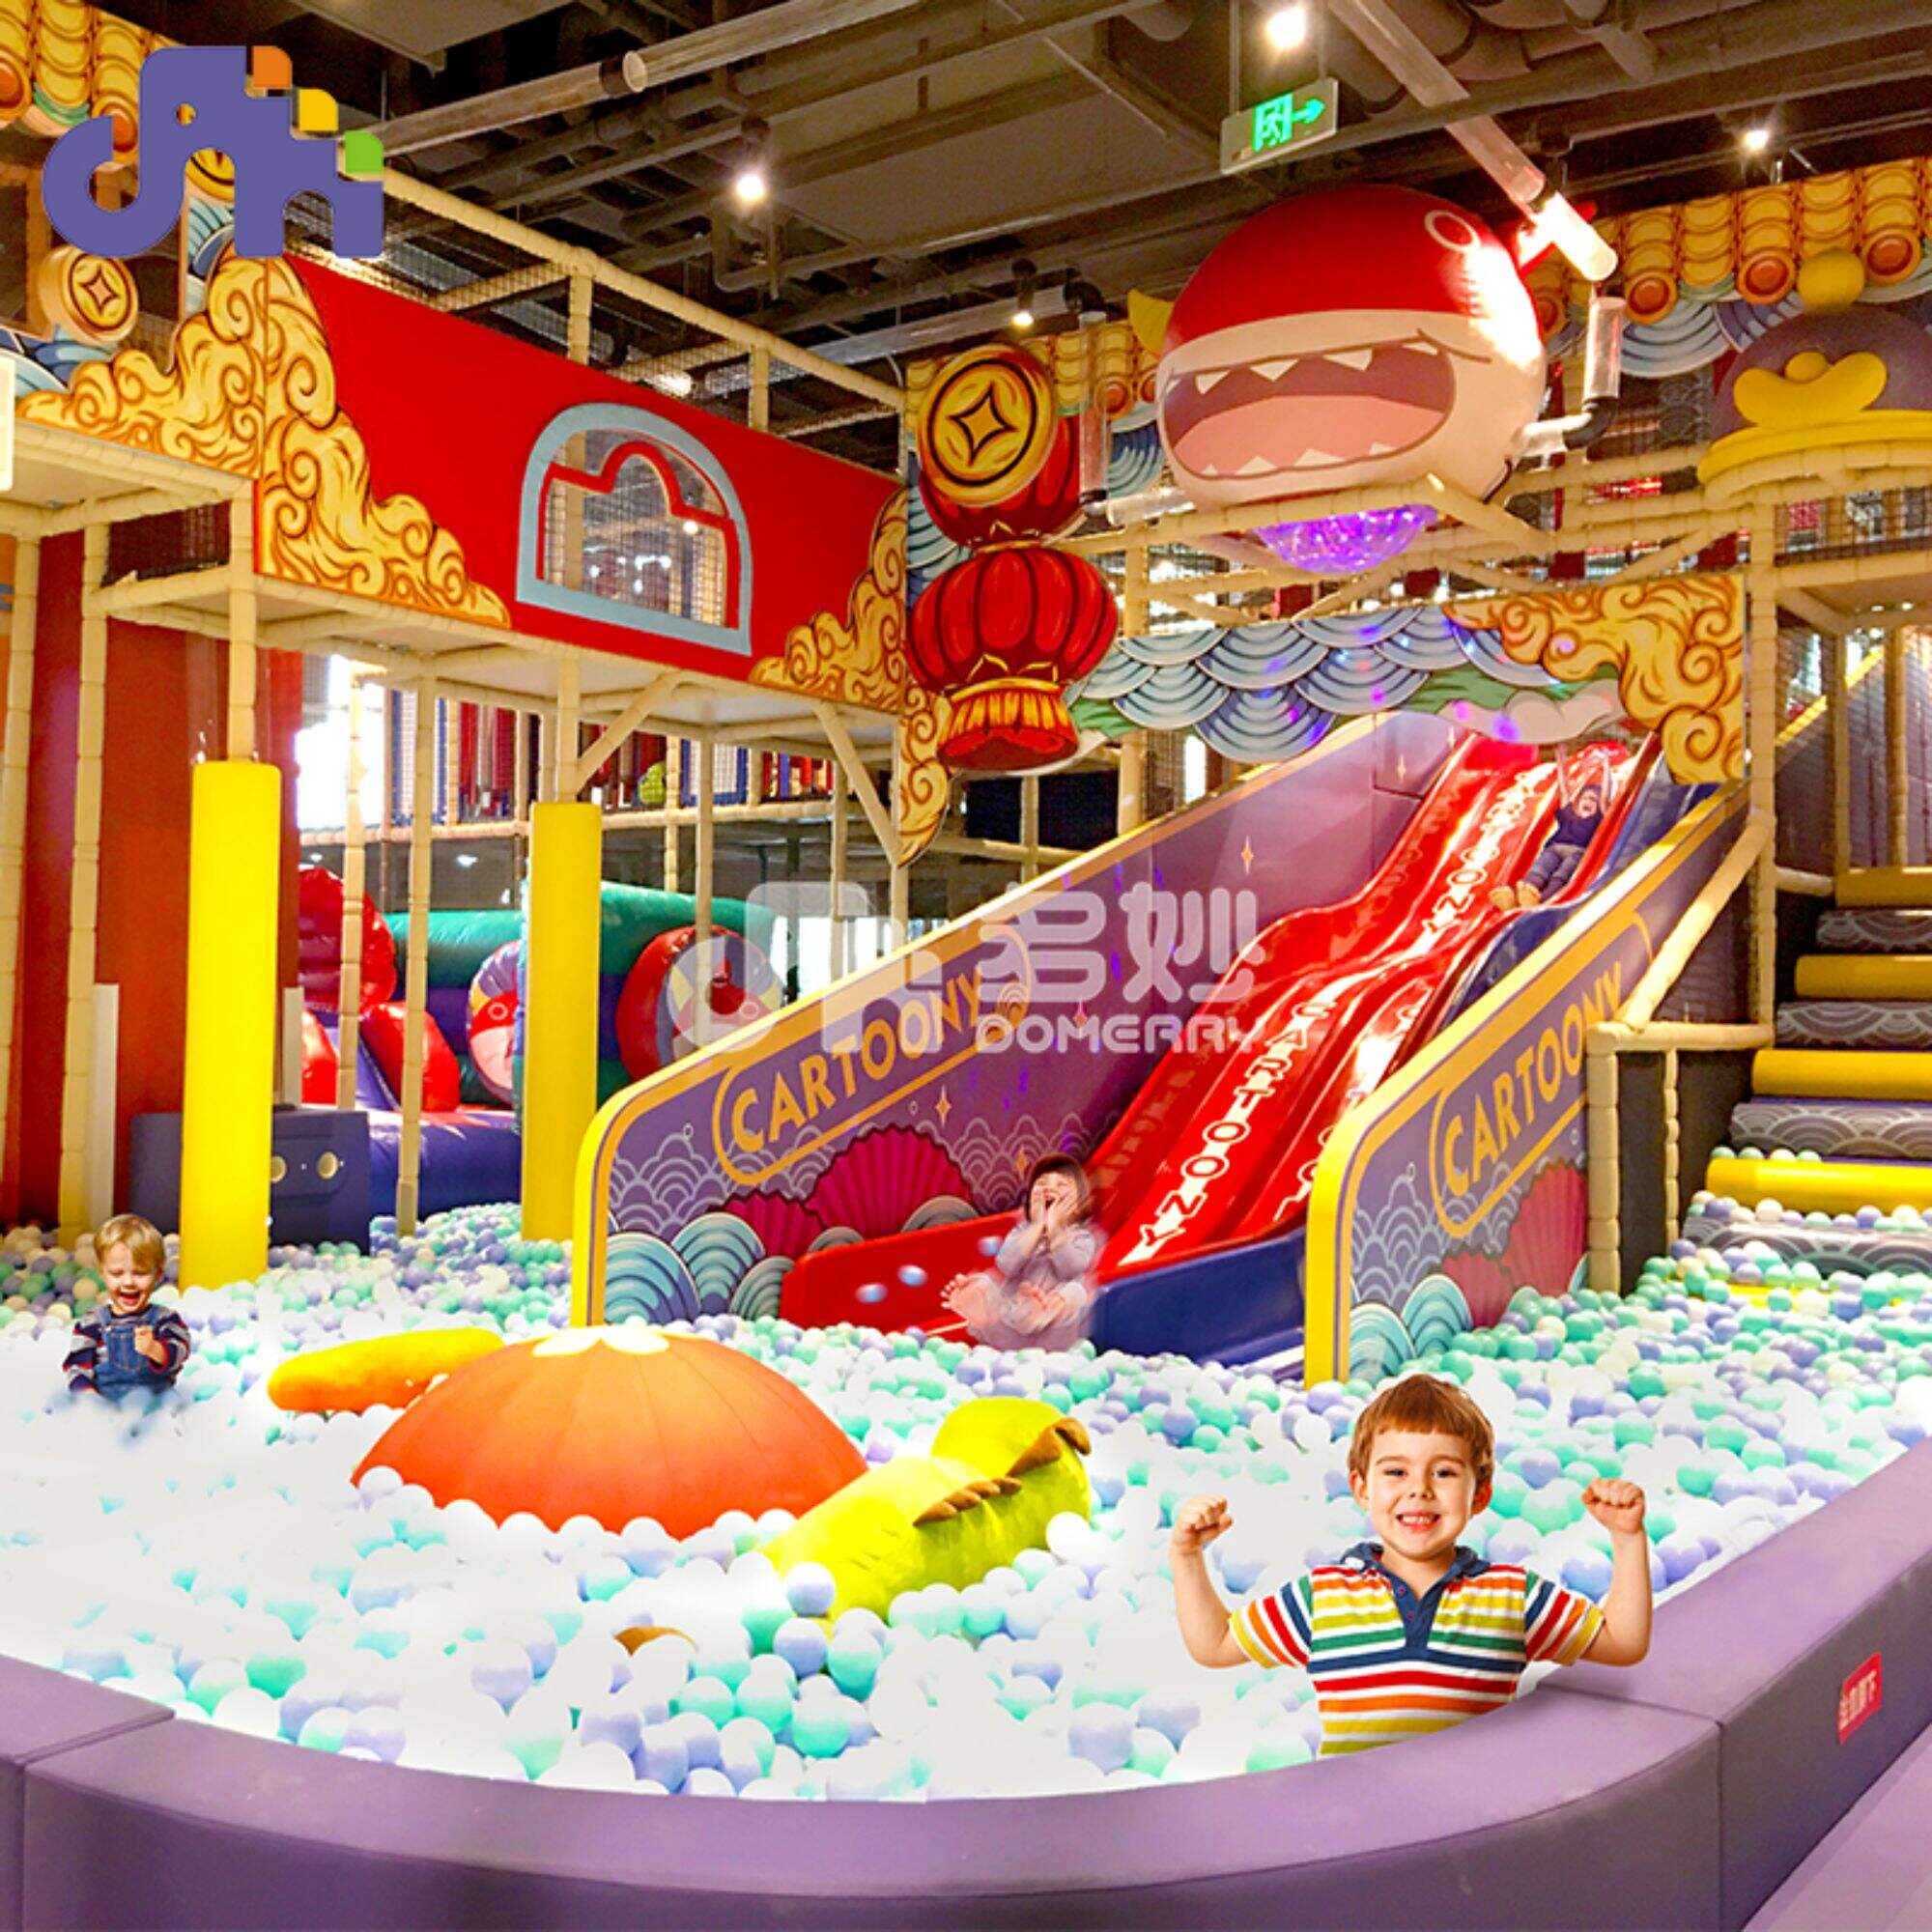 Domerry aangepaste thema kinderen indoor glijbaan speeltuin speelset apparatuur ballenbad speelhuis